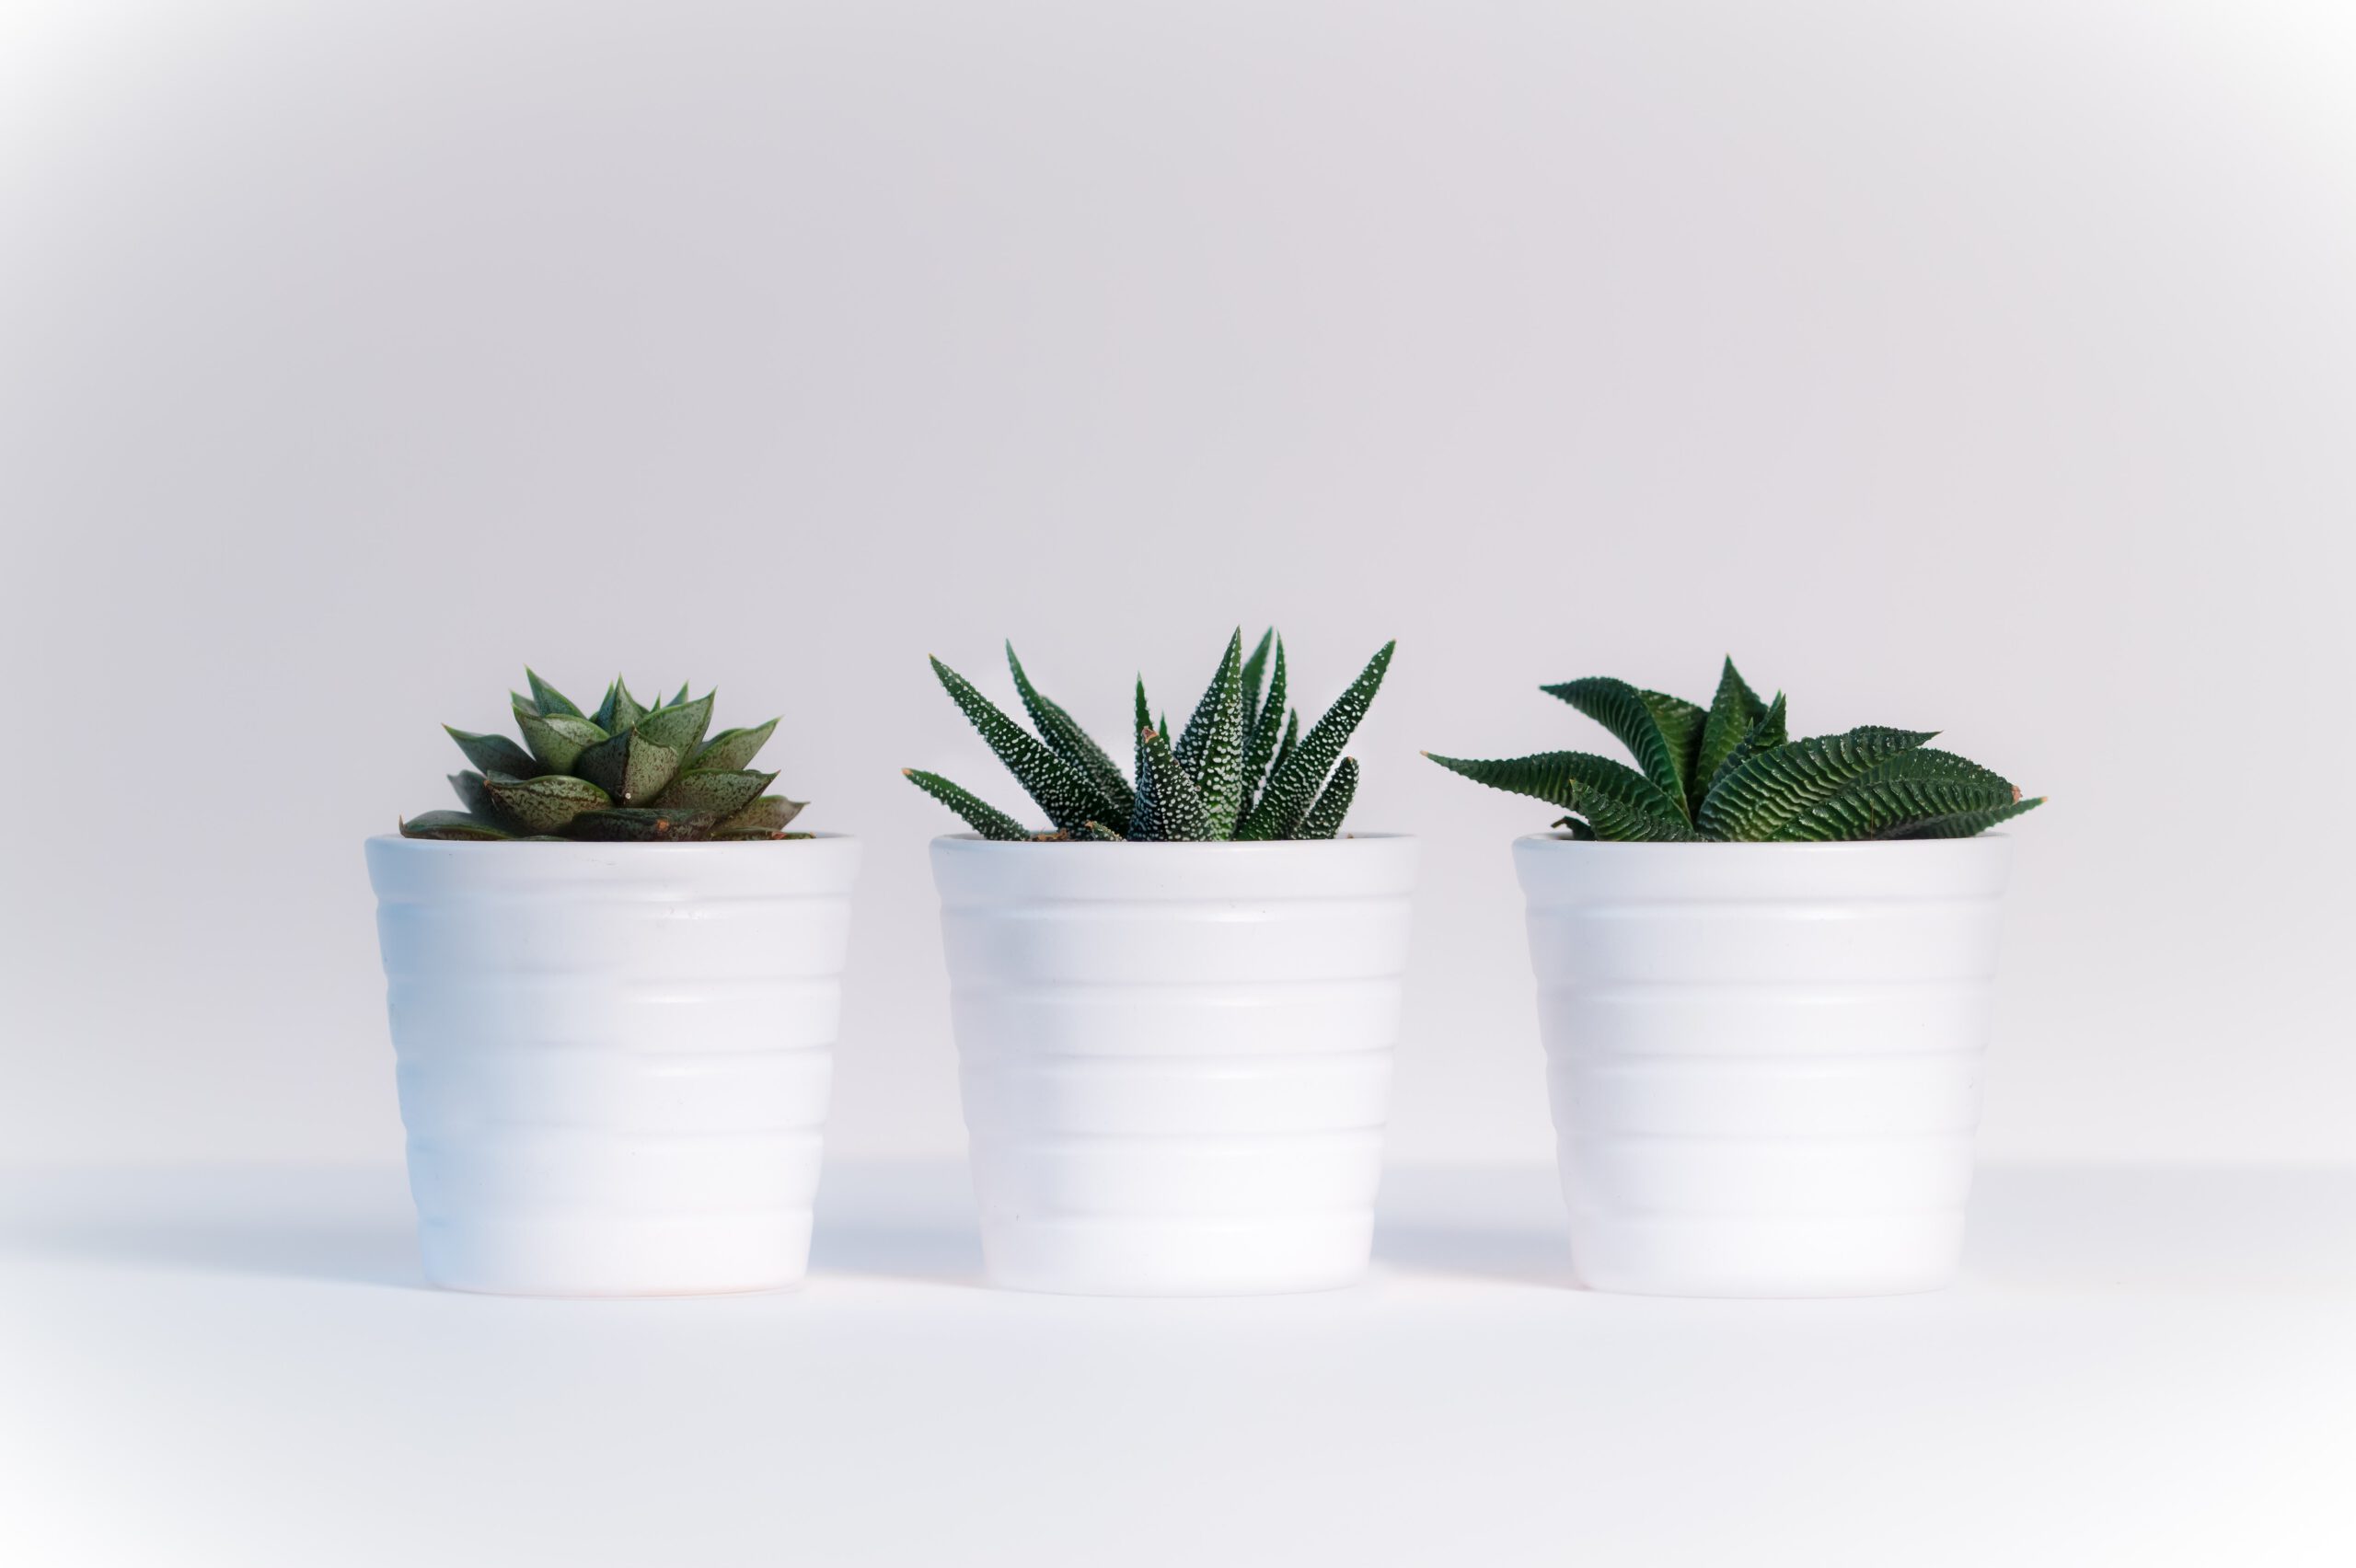 Trzy małe kaktusy w białych doniczkach, stojące na białym stole na białym tle